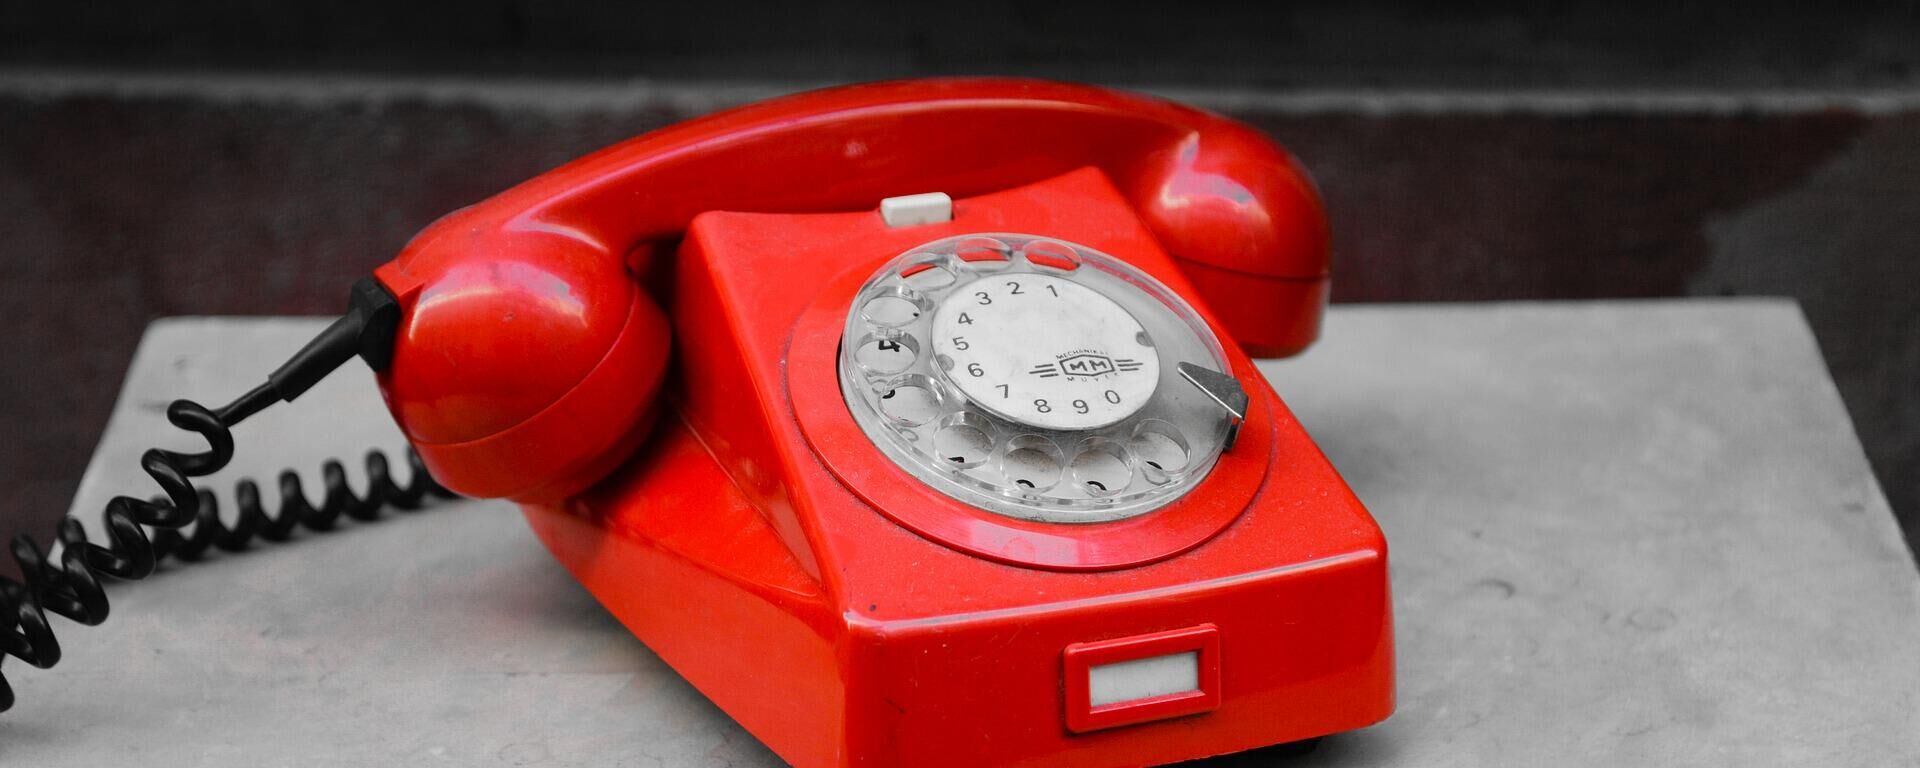 Красный телефон, архивное фото - Sputnik Lietuva, 1920, 10.12.2021